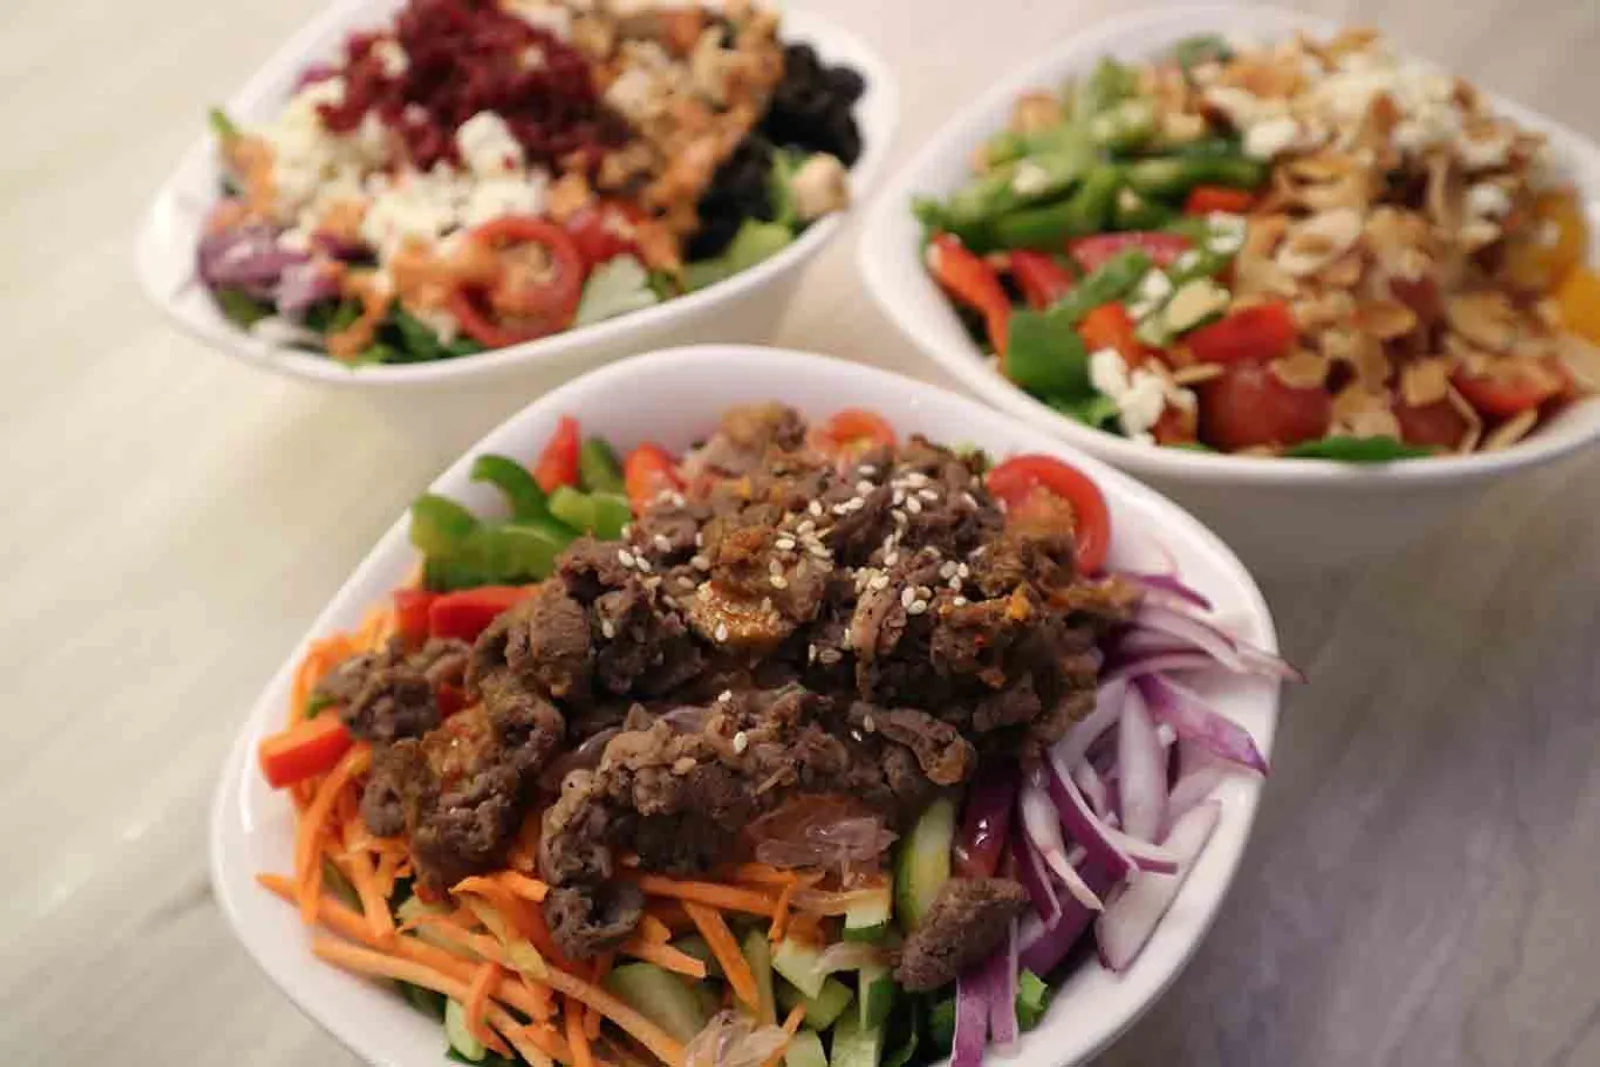 SaladStop! Sajikan Salad Bercita Rasa a la Kuliner dari Tiga Negara 